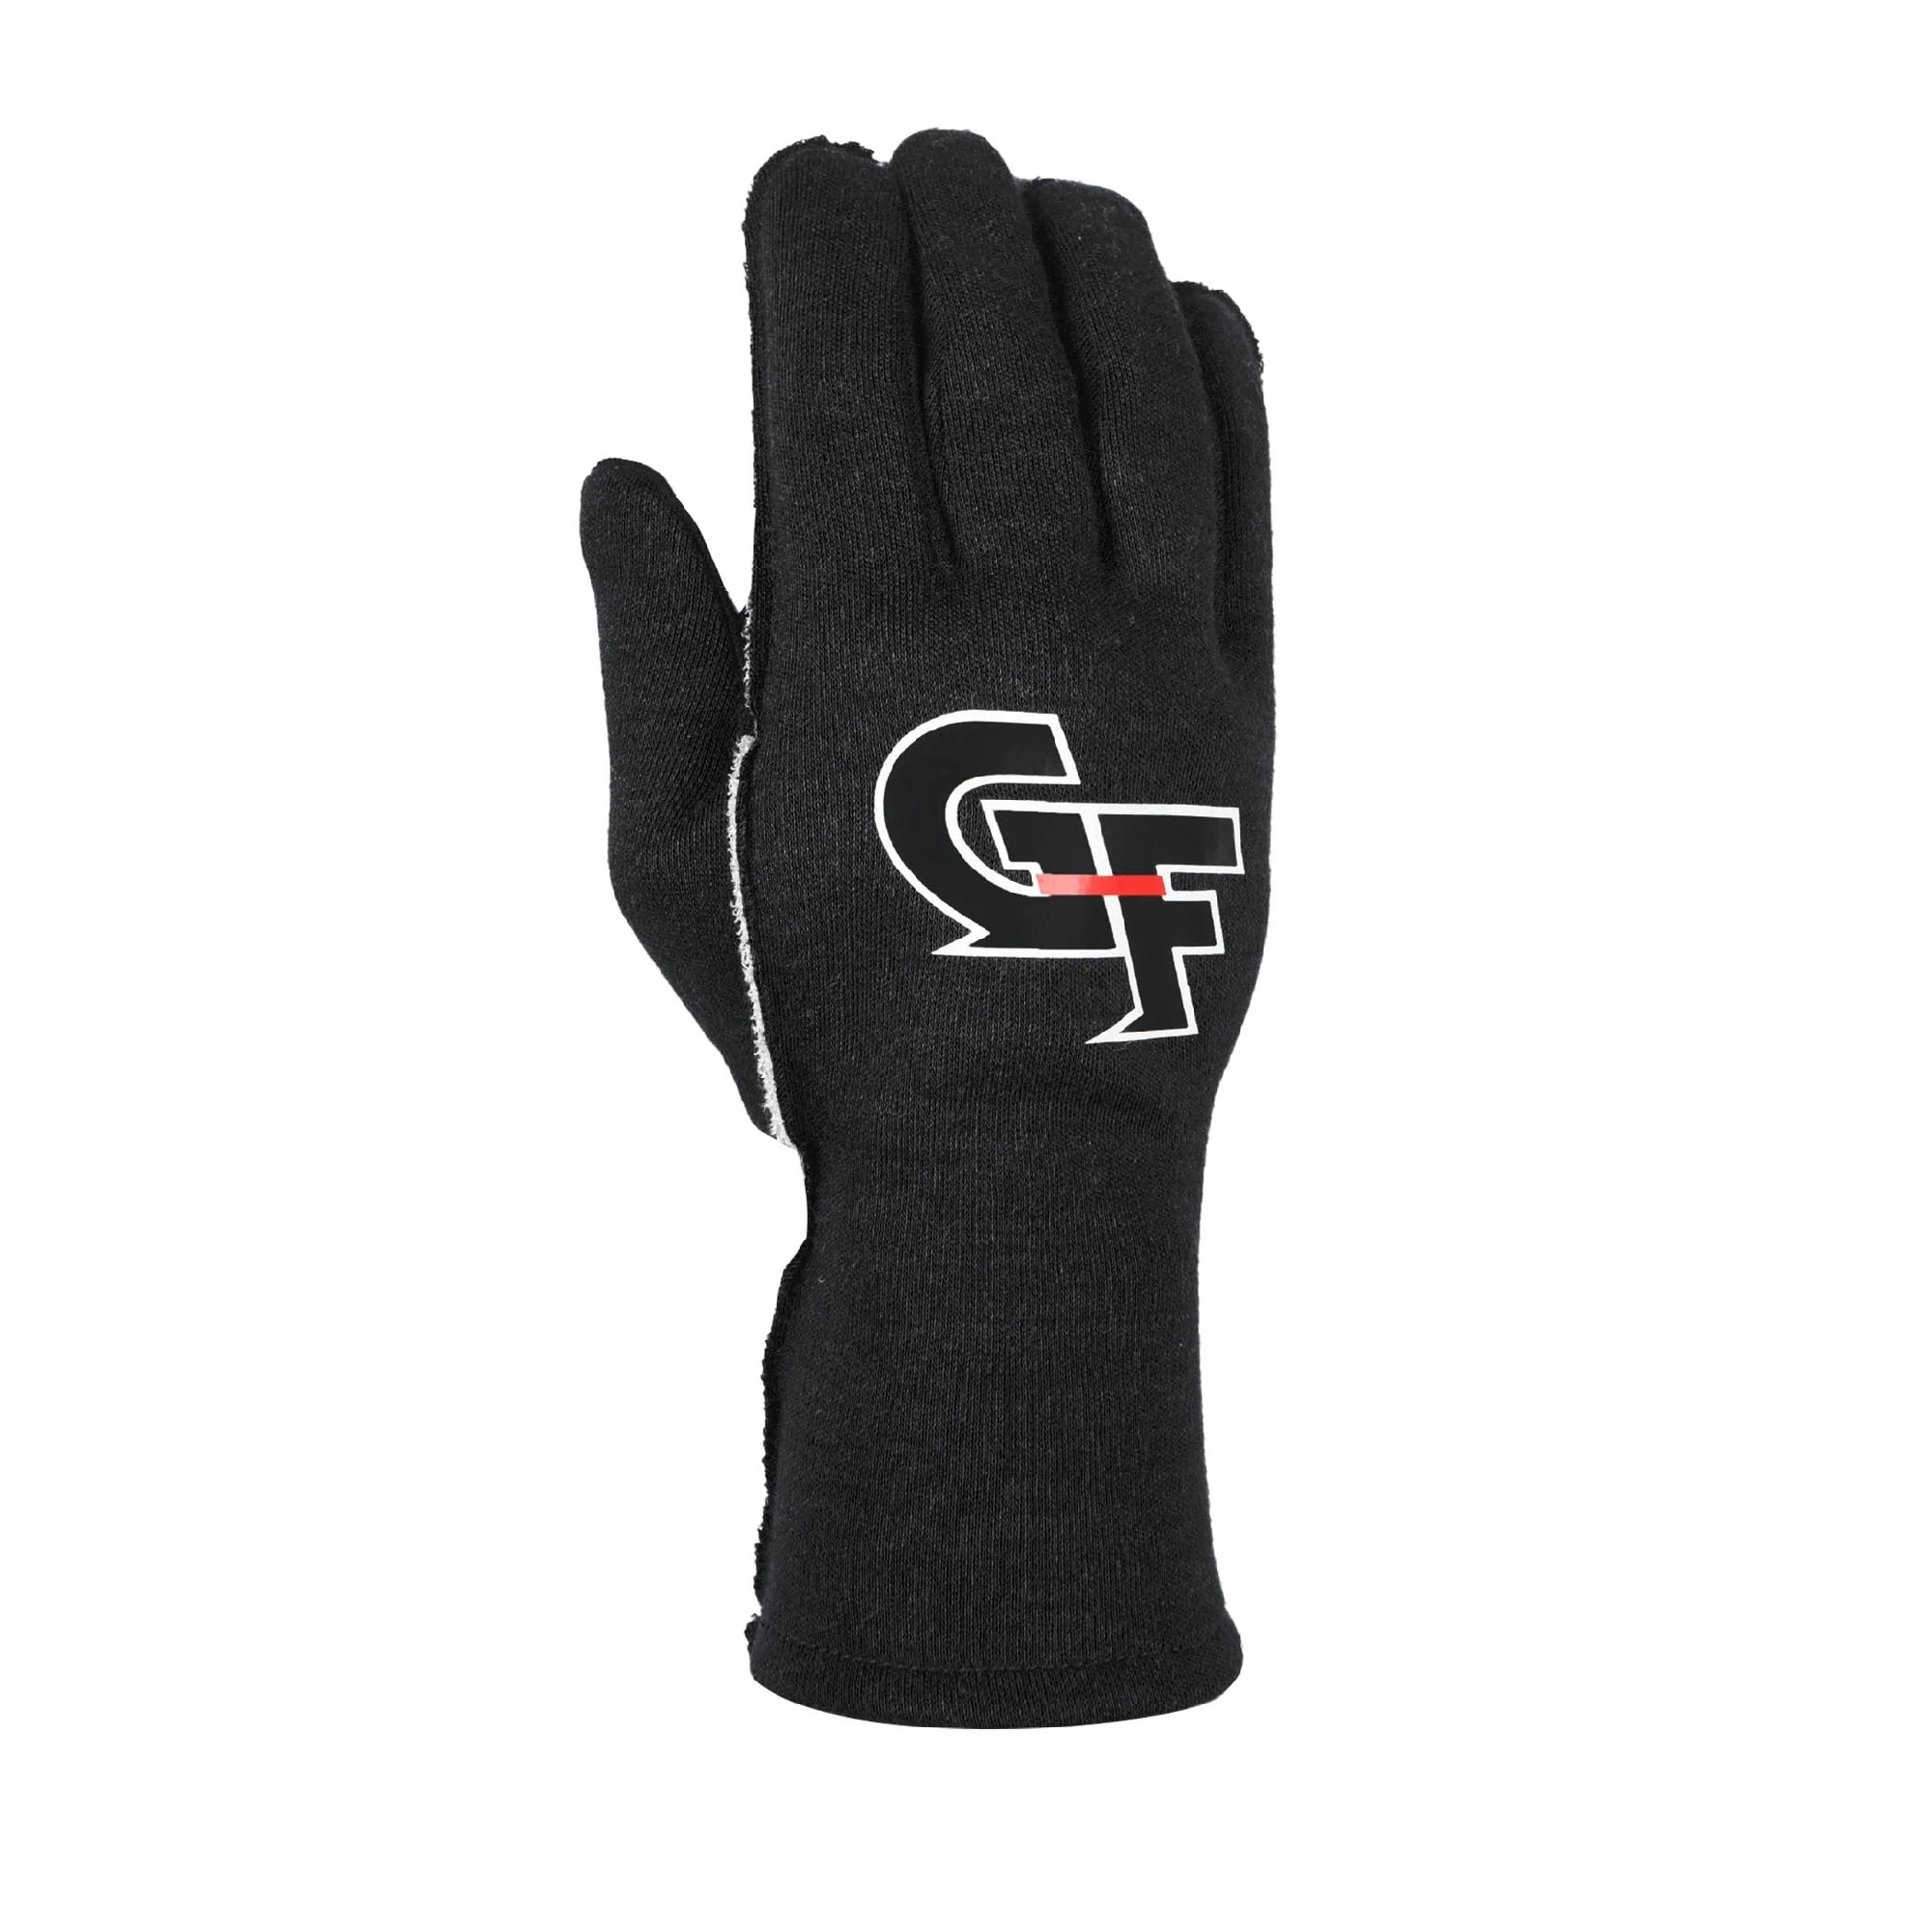 G-FORCE Gloves G-Limit Large Black